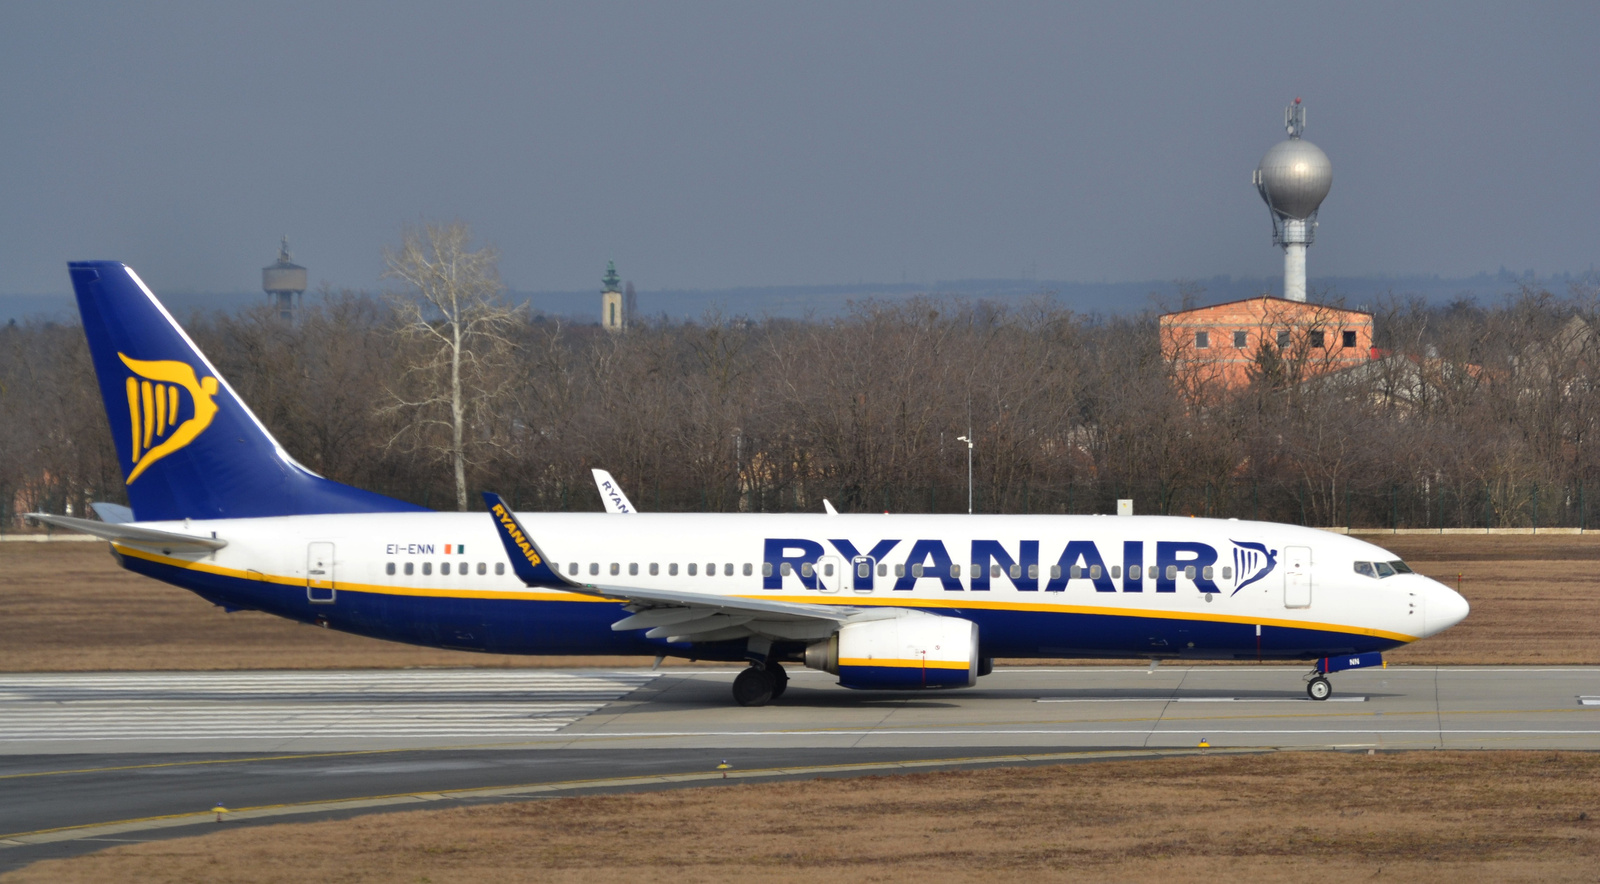 Ryanair - Boeing 737-8AS